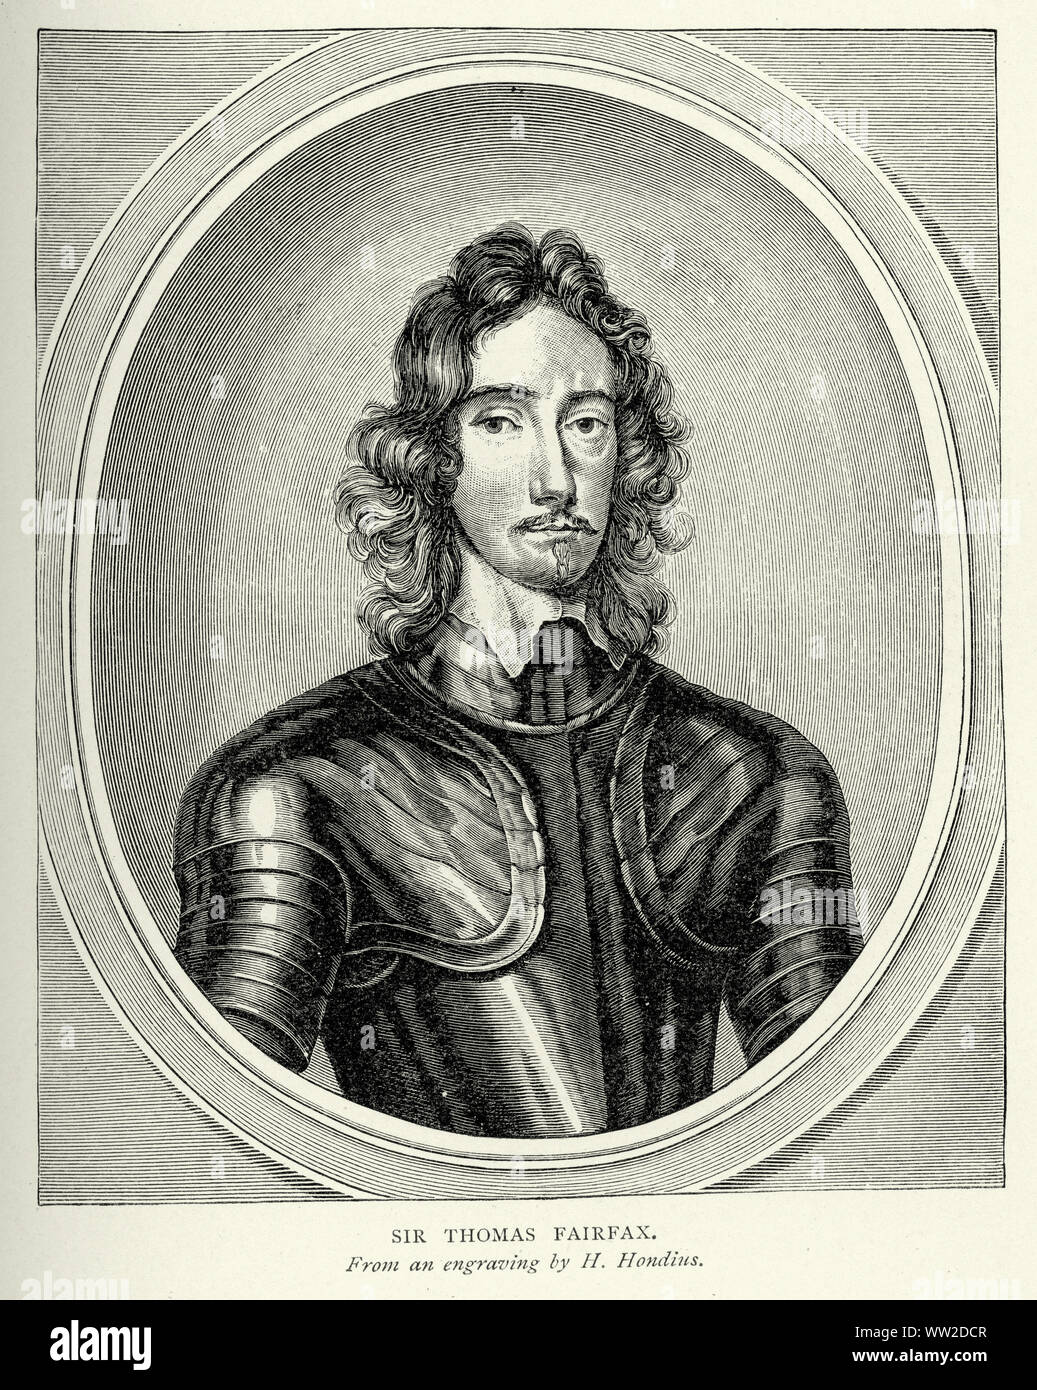 Thomas Fairfax, 3. Herr Fairfax von Cameron (17. Januar 1612 - 12. November 1671), die auch als Sir Thomas Fairfax, Herrn bekannt, war ein englischer Edelmann, Peer, Politiker, General, und Parlamentarische Commander-in-chief während des Englischen Bürgerkriegs. Stockfoto